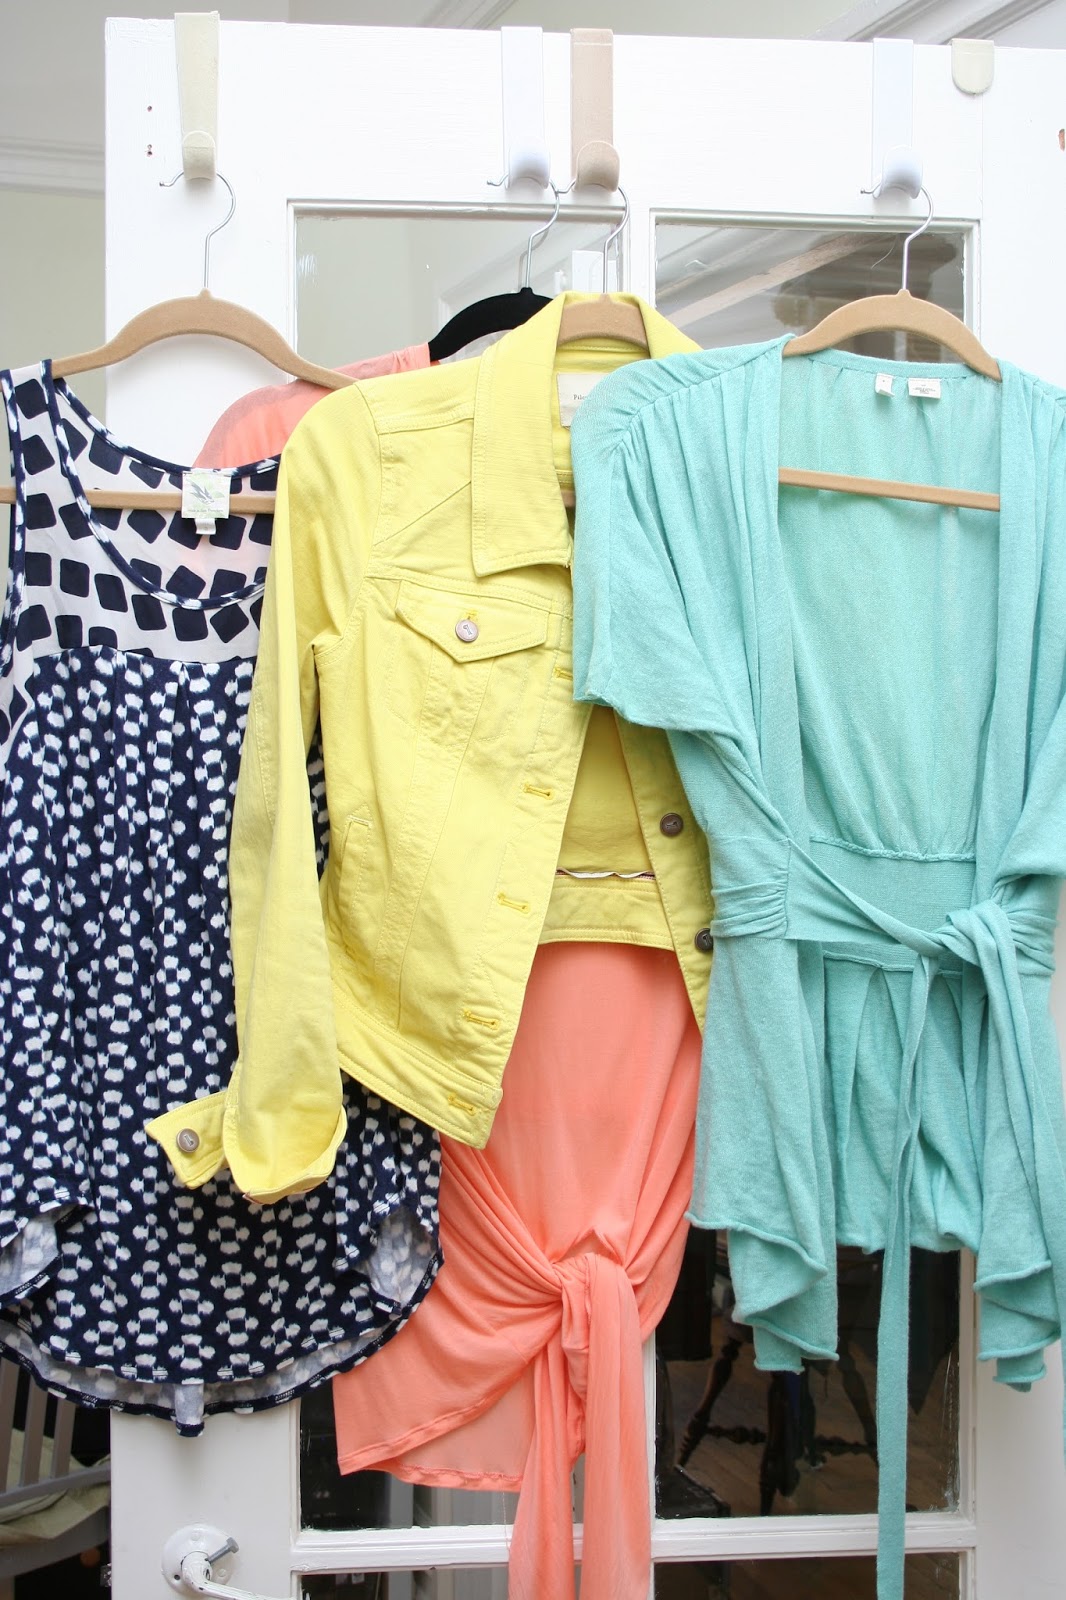 Nuevos avances en textiles: Vestidos de la pasarela a la lavadora